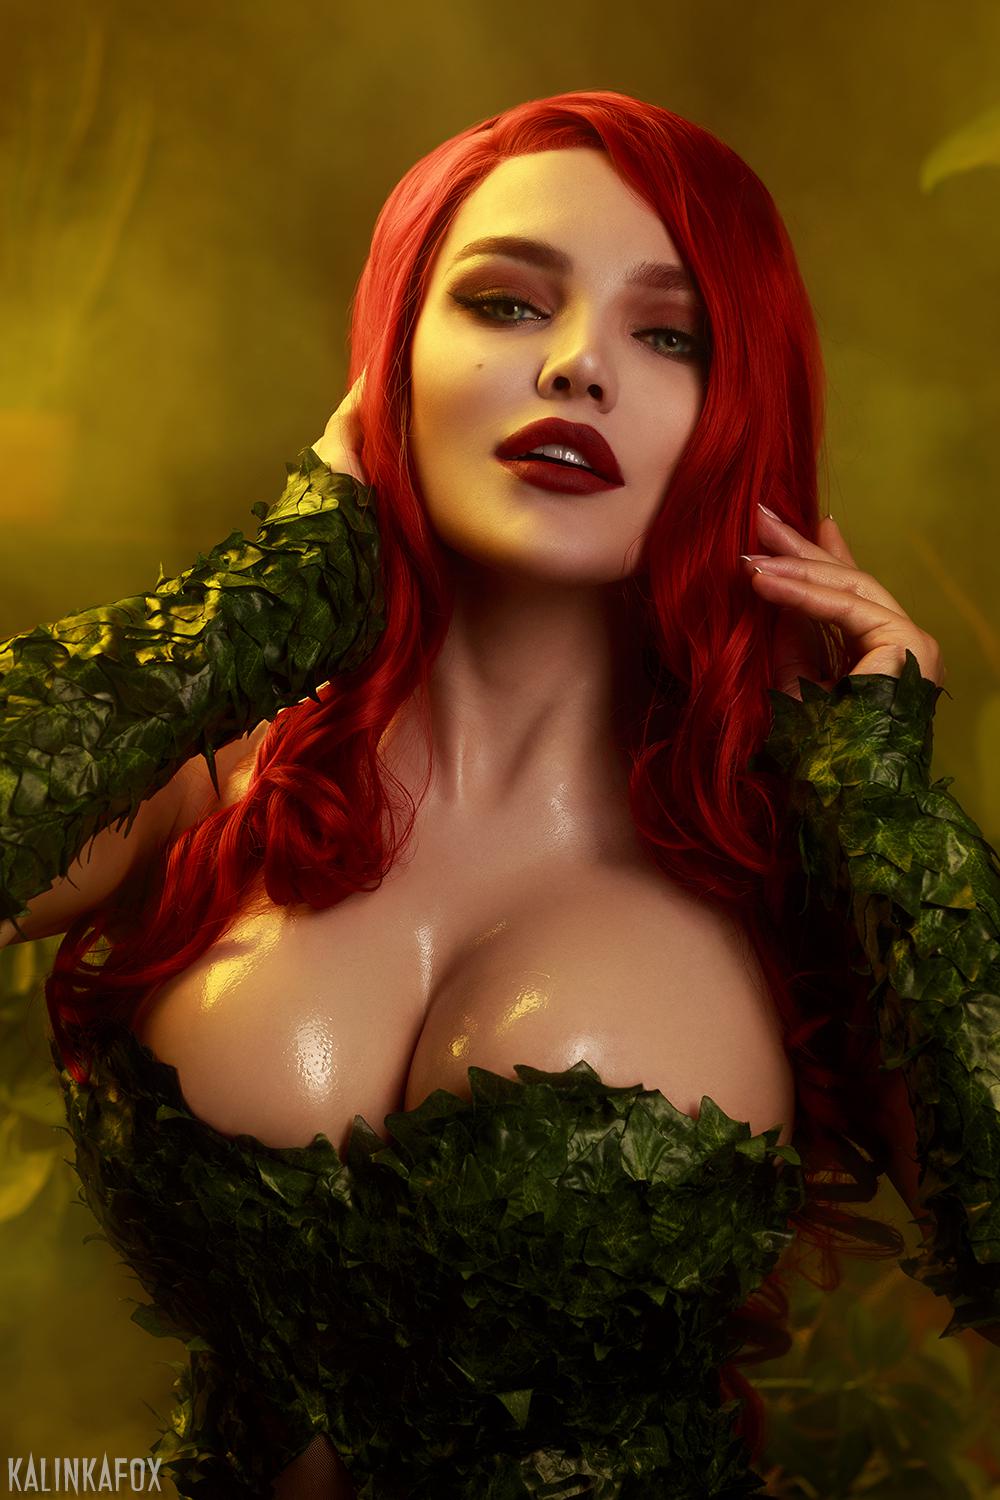 1000px x 1500px - Poison Ivy by KalinkaFox